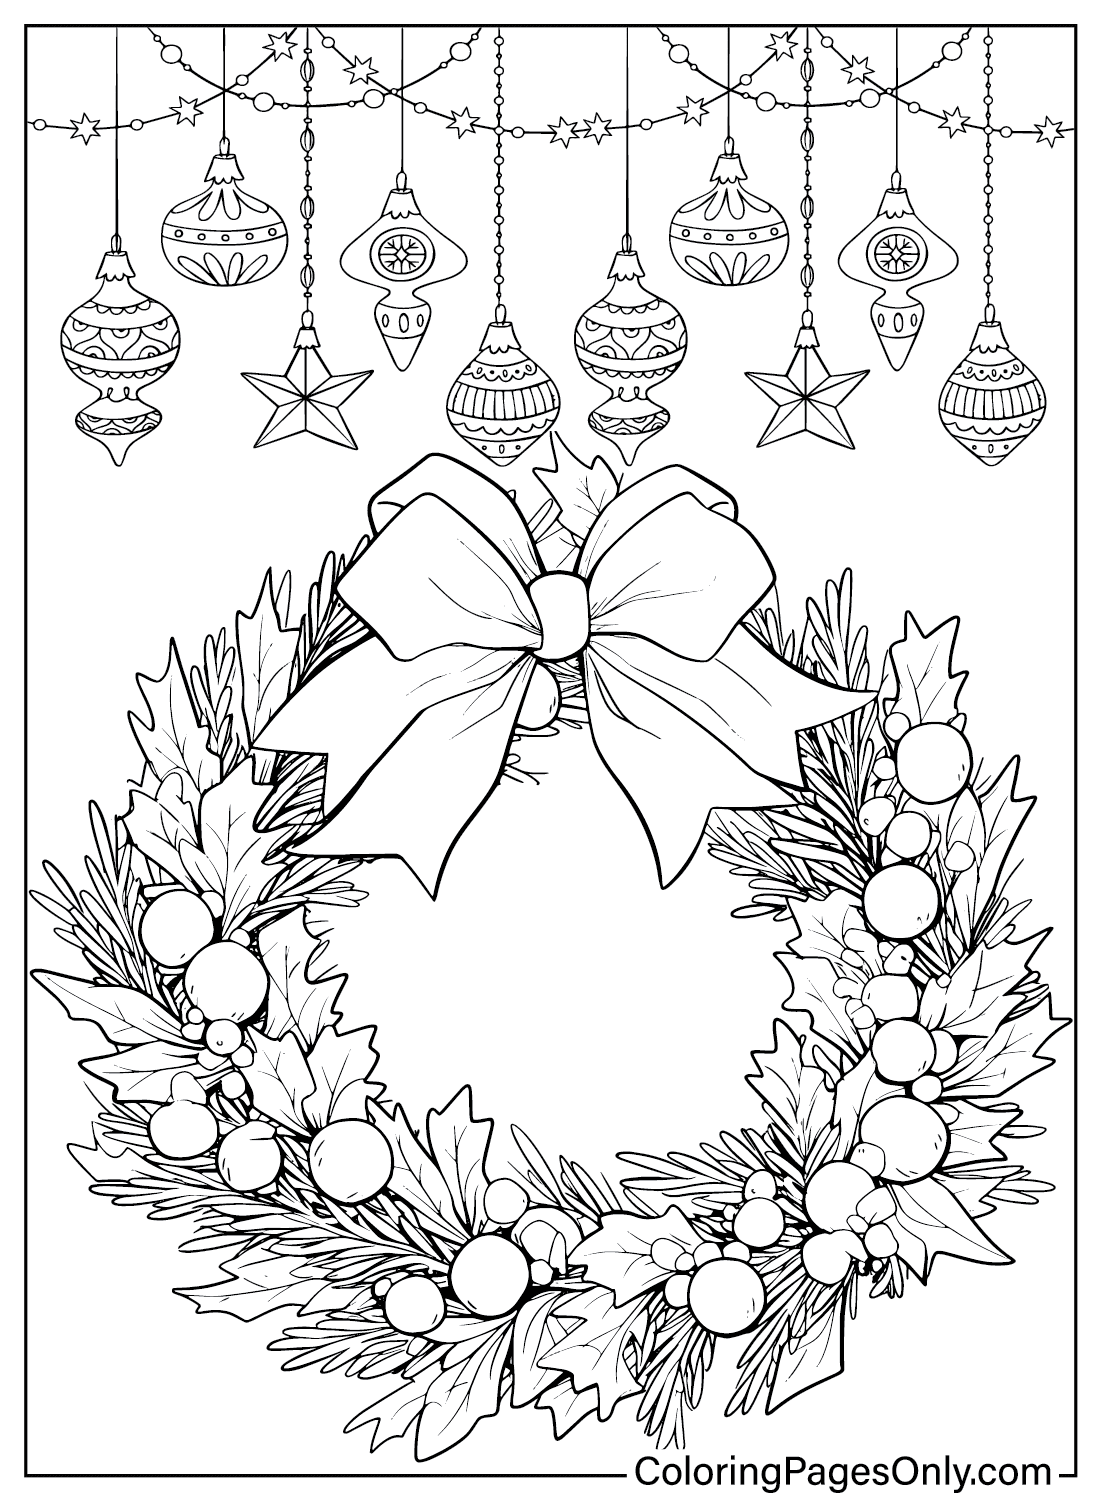 Disegno della ghirlanda di Natale da colorare dalla ghirlanda di Natale